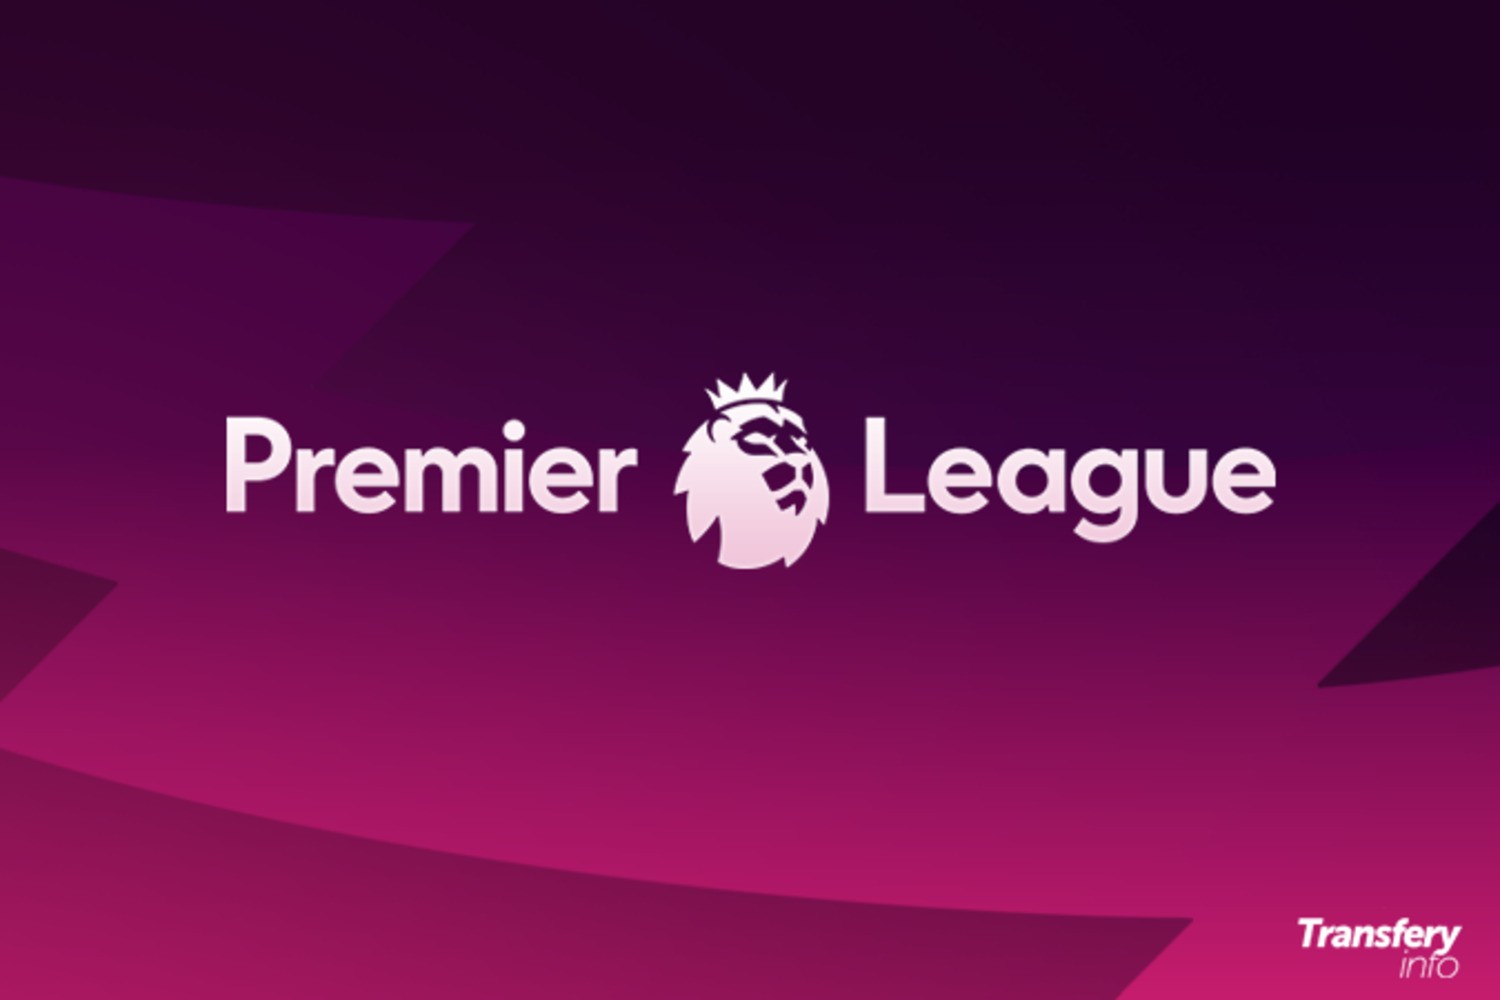 Premier League: Kluby chcą powrotu do trzech zmian w trakcie meczu